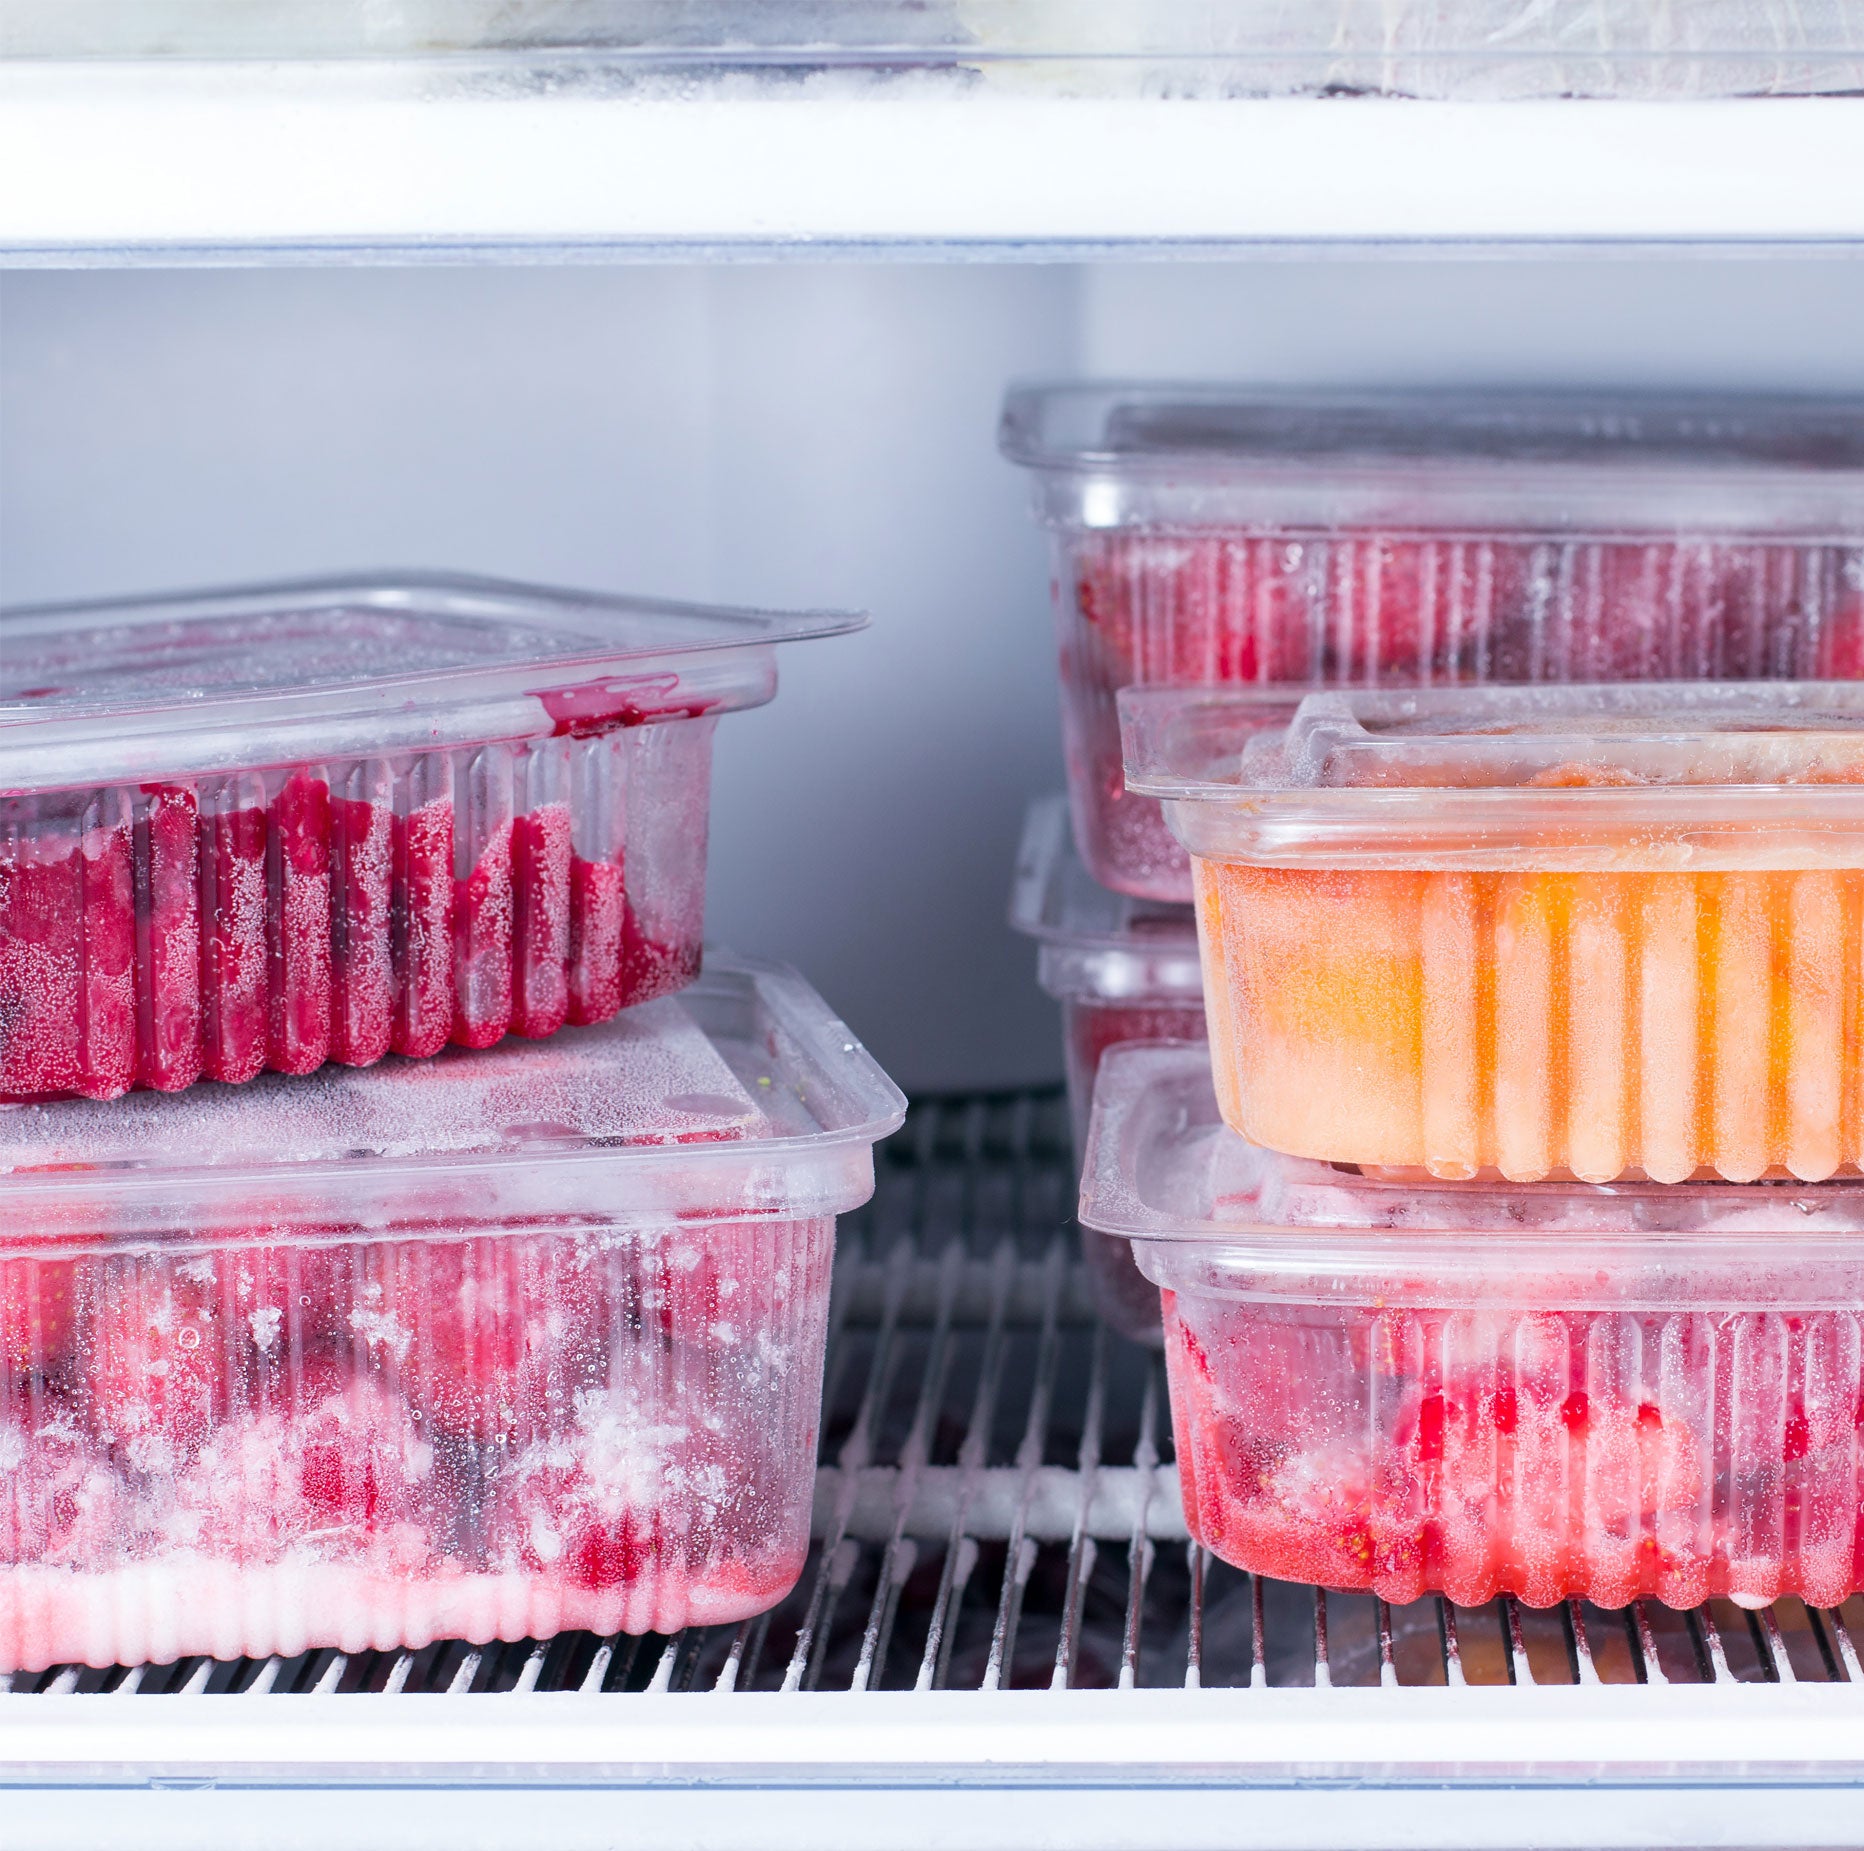 Kjøleskap og fryser kombinasjon - 1,4 x 0,81 m - 1400 liter - med 2 glassdører